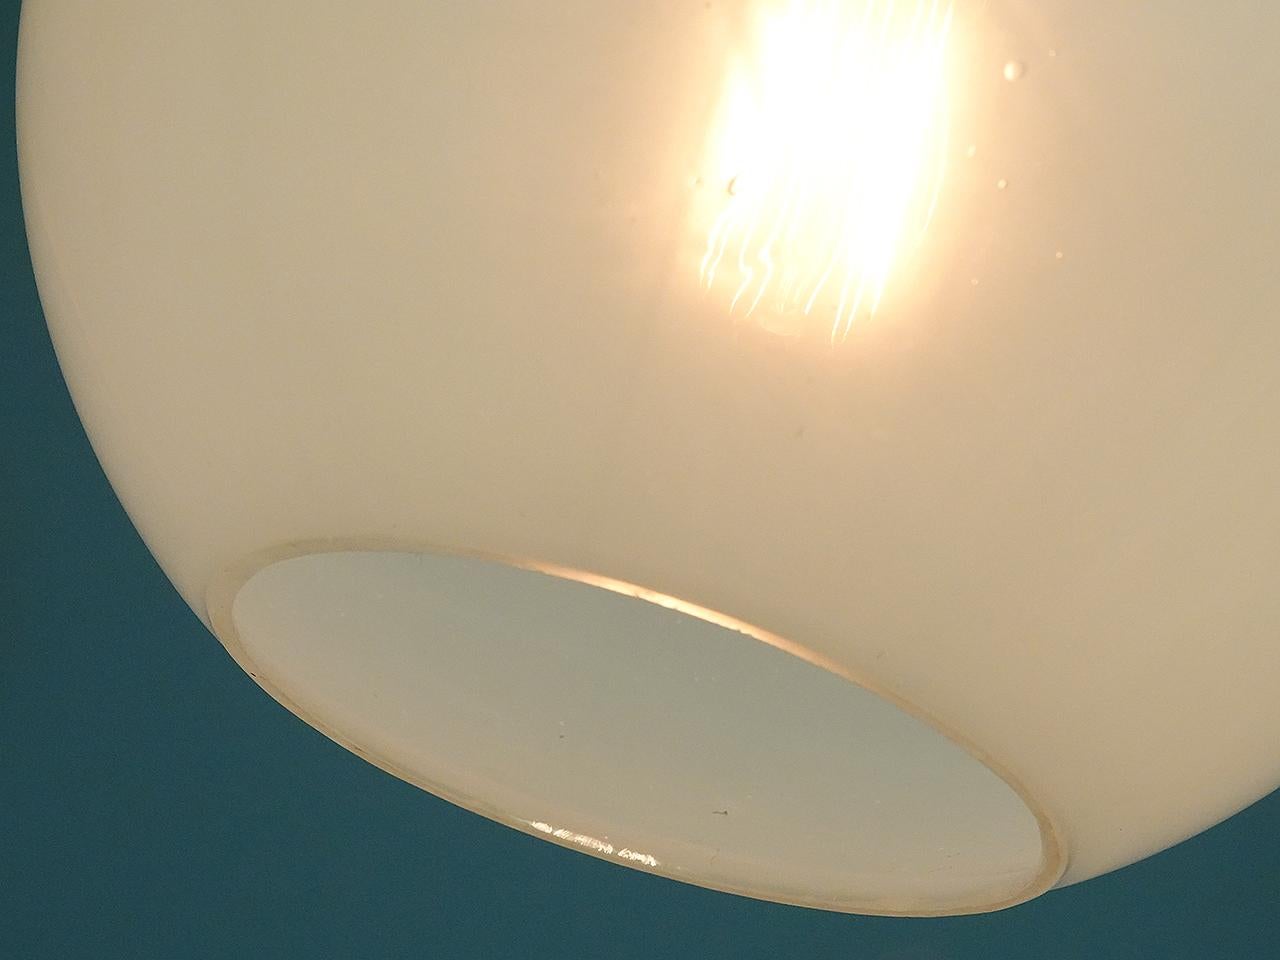 Diese eleganten mundgeblasenen Lampenschirme sind aus Vaselineglas und weisen die Merkmale von handgefertigtem Glas auf. Sie haben ein schönes, gleichmäßiges und warmes Licht ohne Glühfadenglanz. Die Leuchte hat einen interessanten, schweren